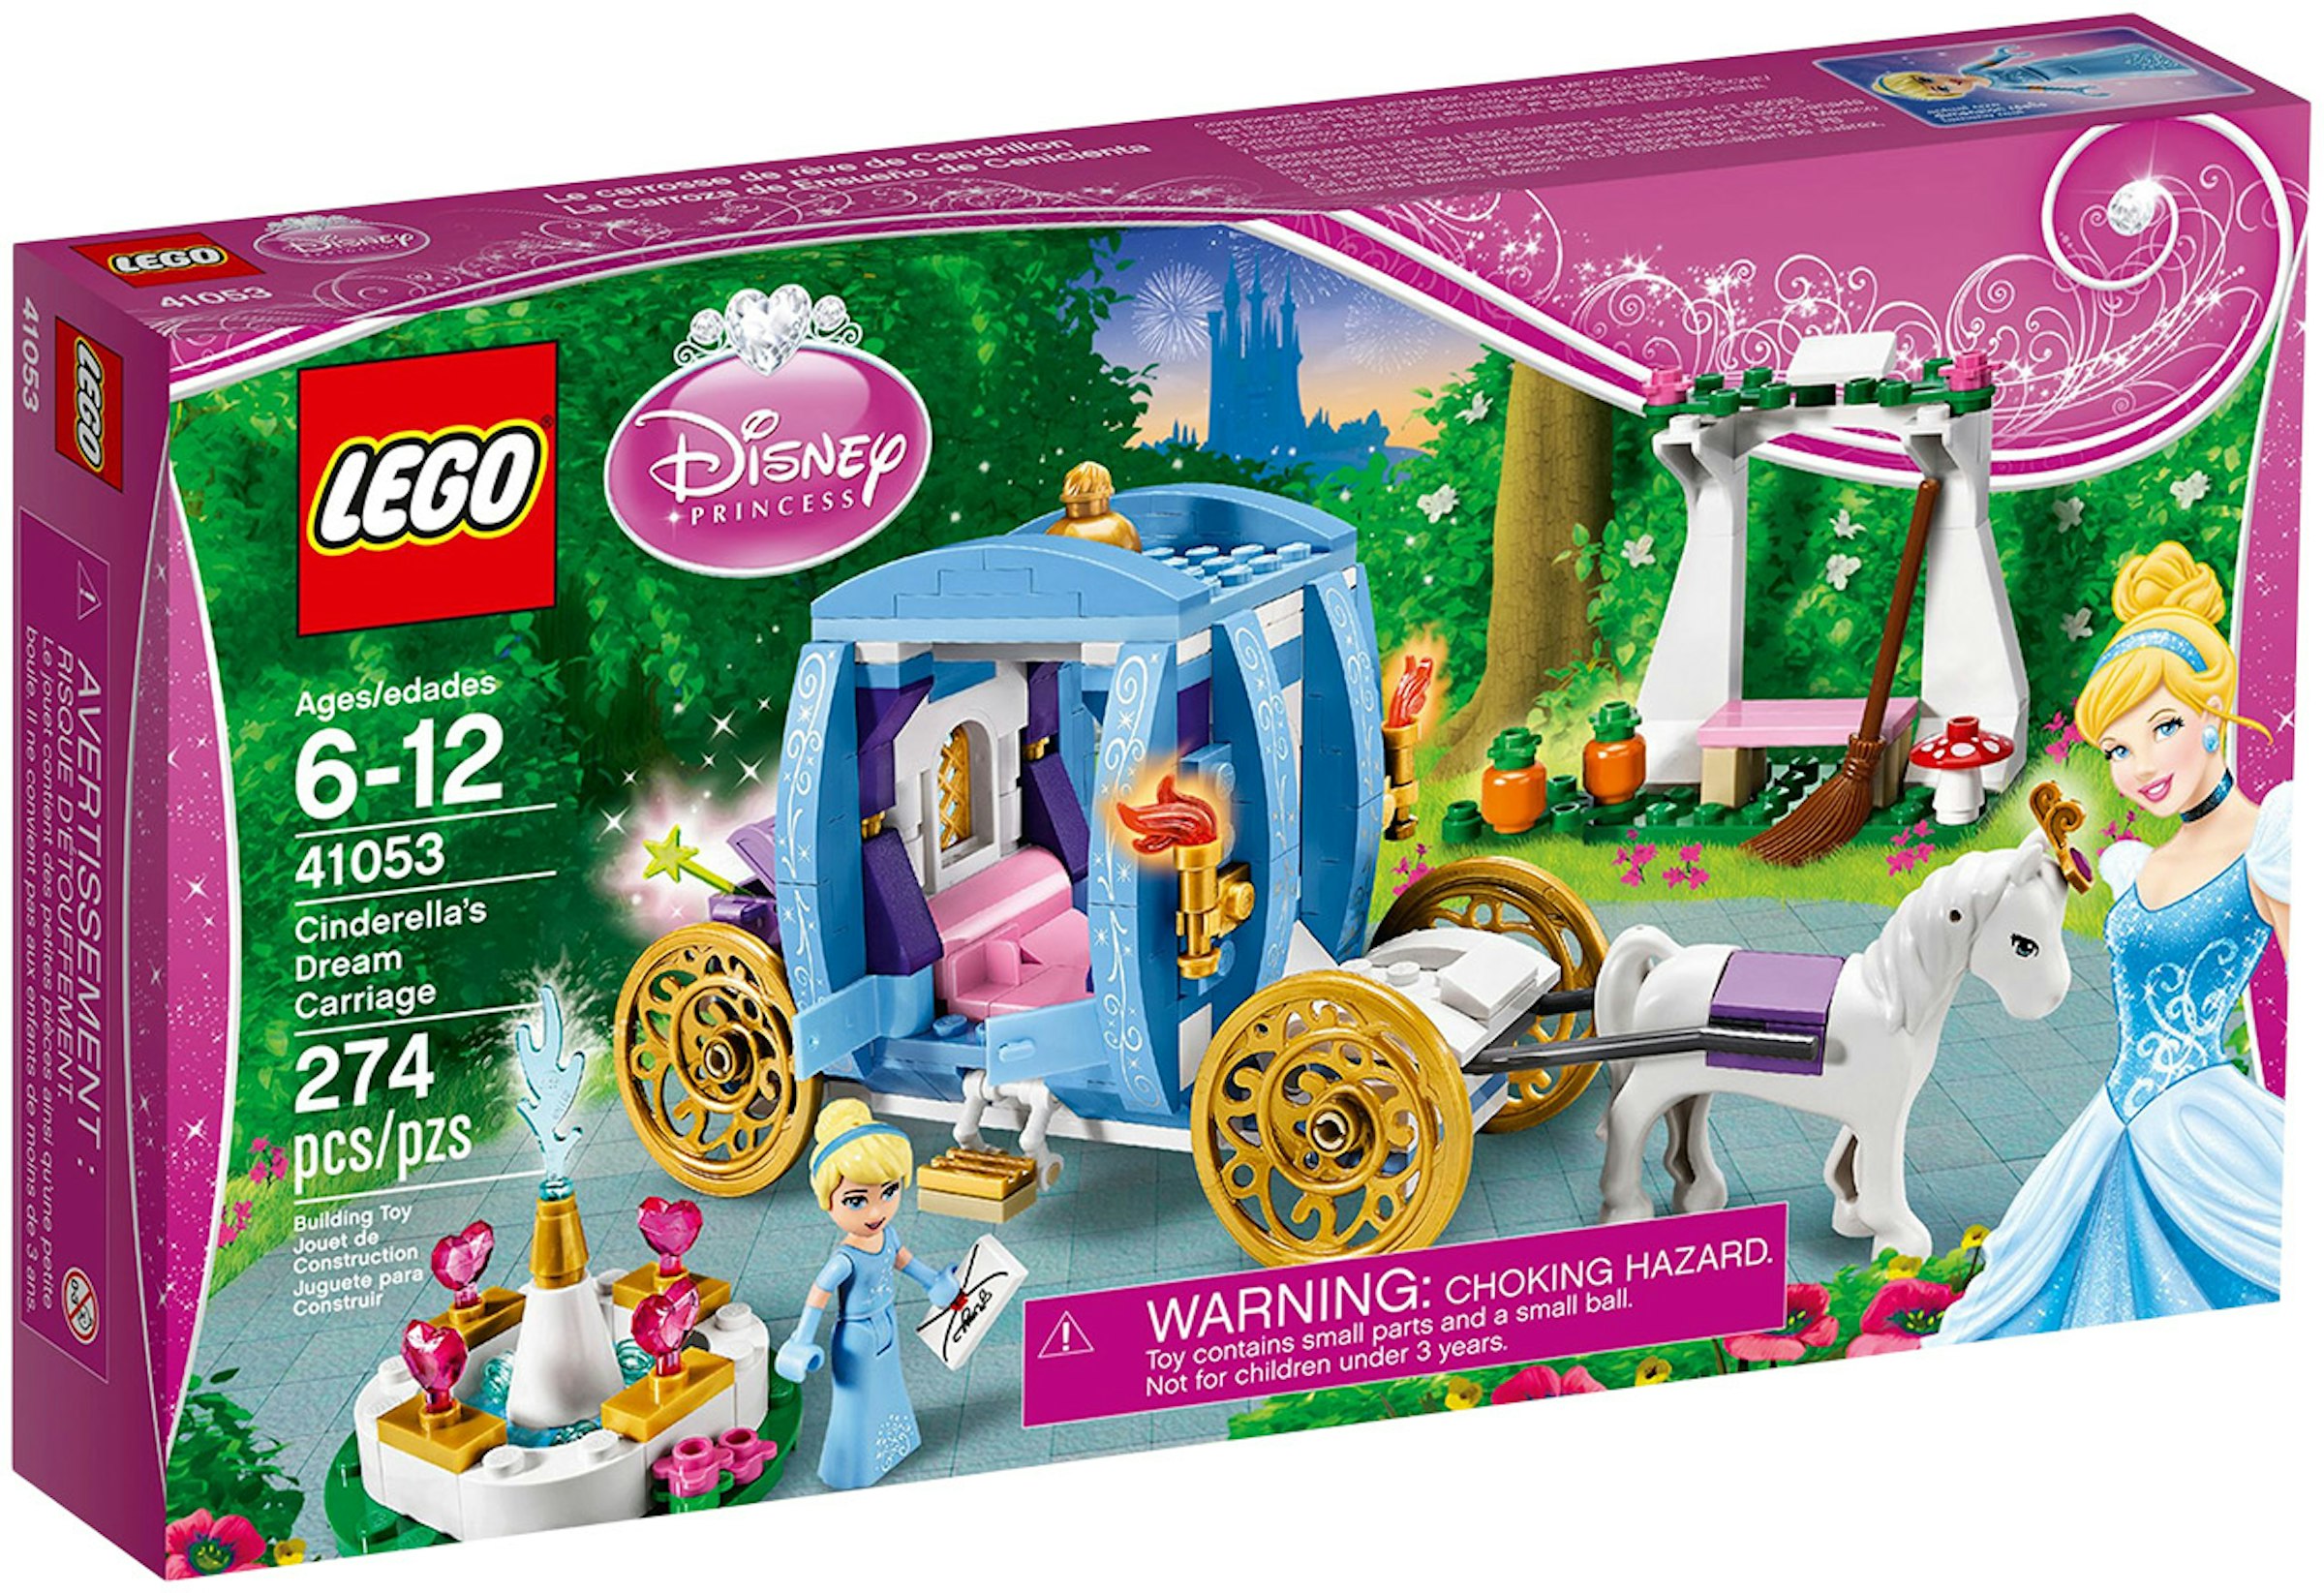 Håndværker krig Trolley LEGO Disney Cinderella's Dream Carriage Set 41053 - FW16 - US